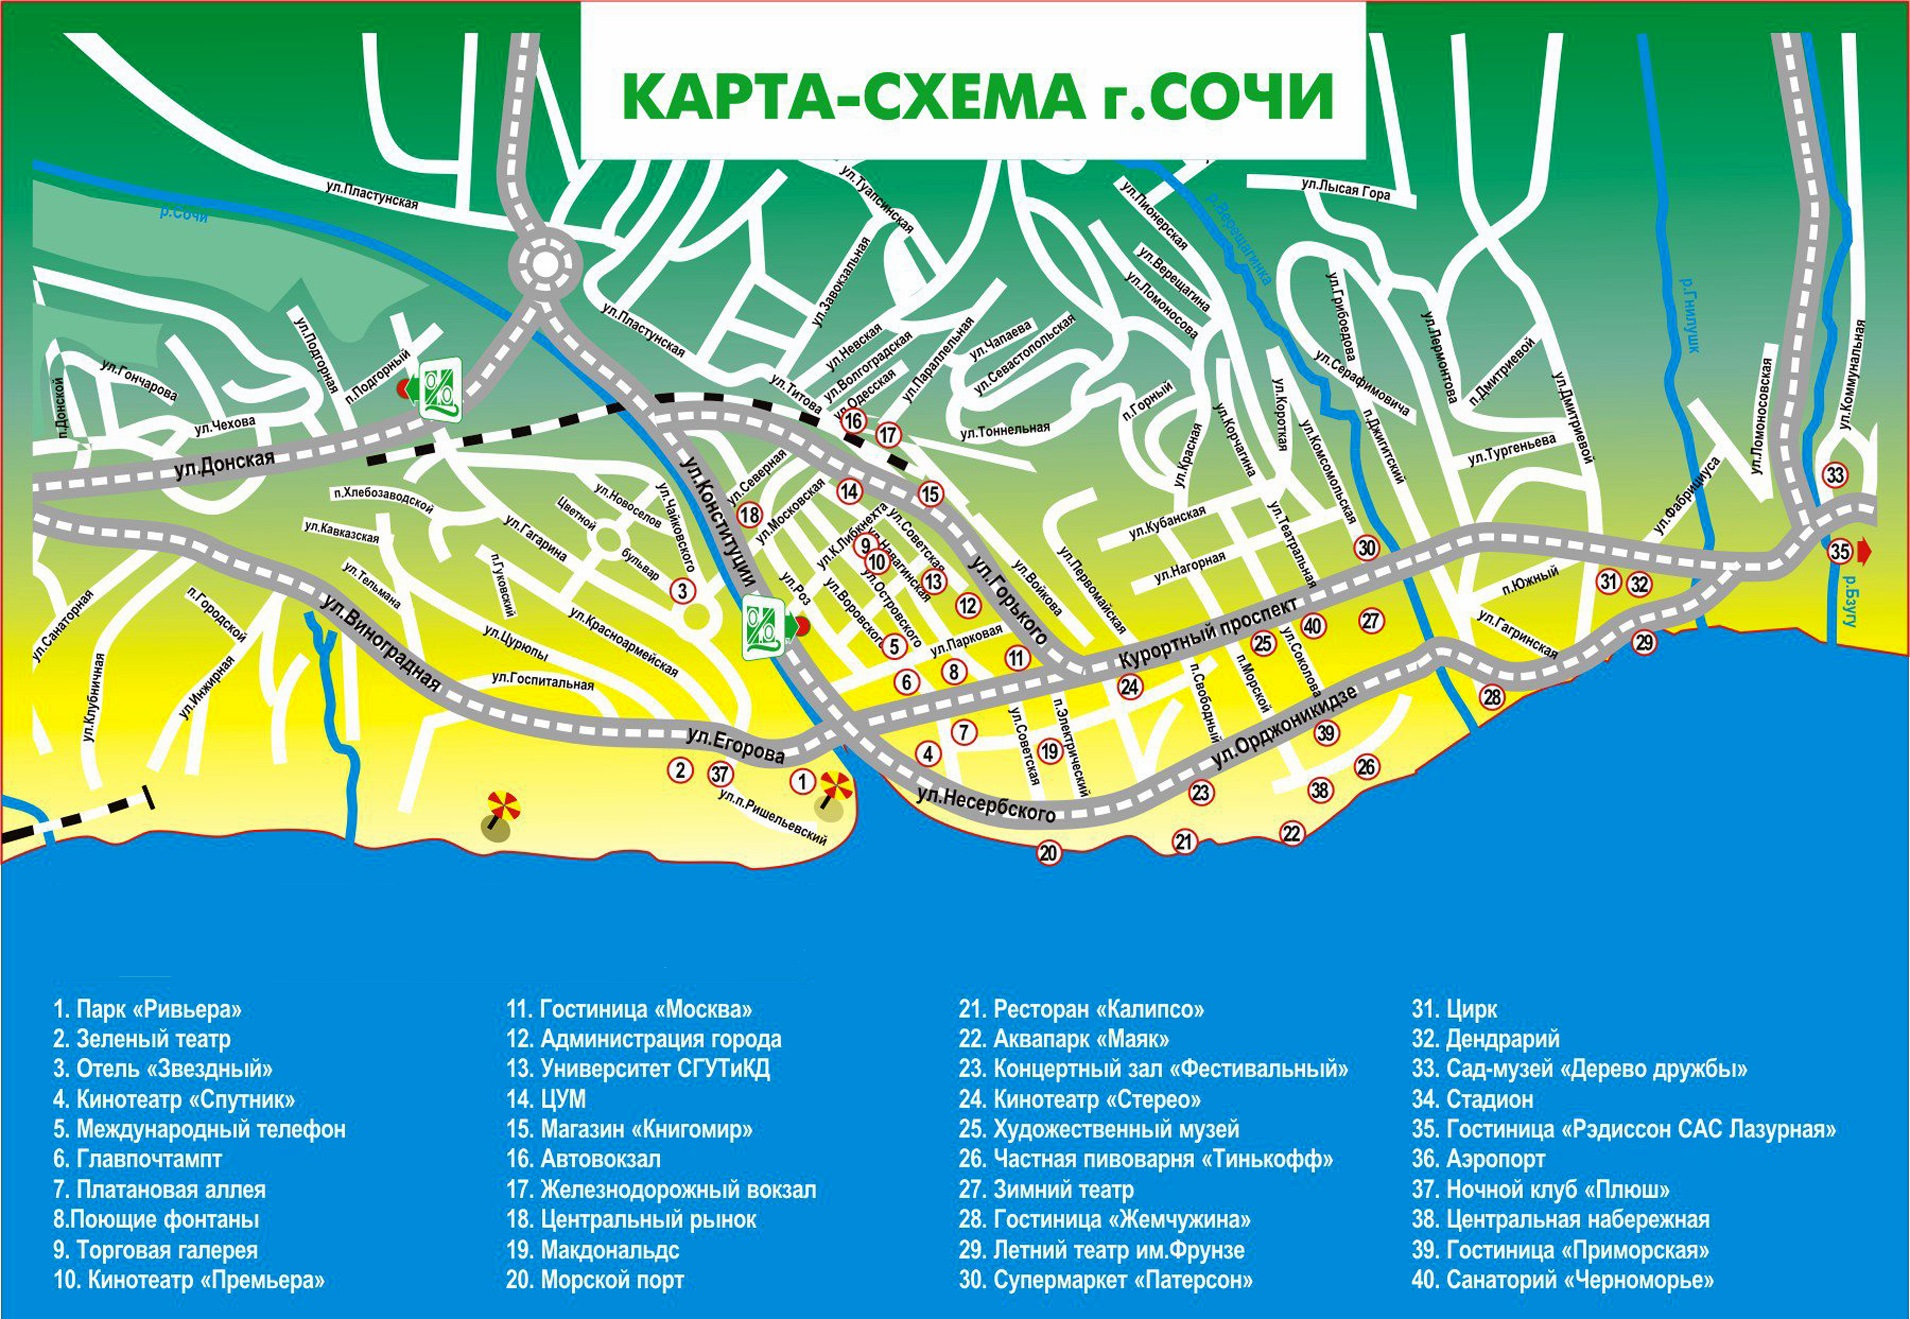 Лазаревское жилье на карте